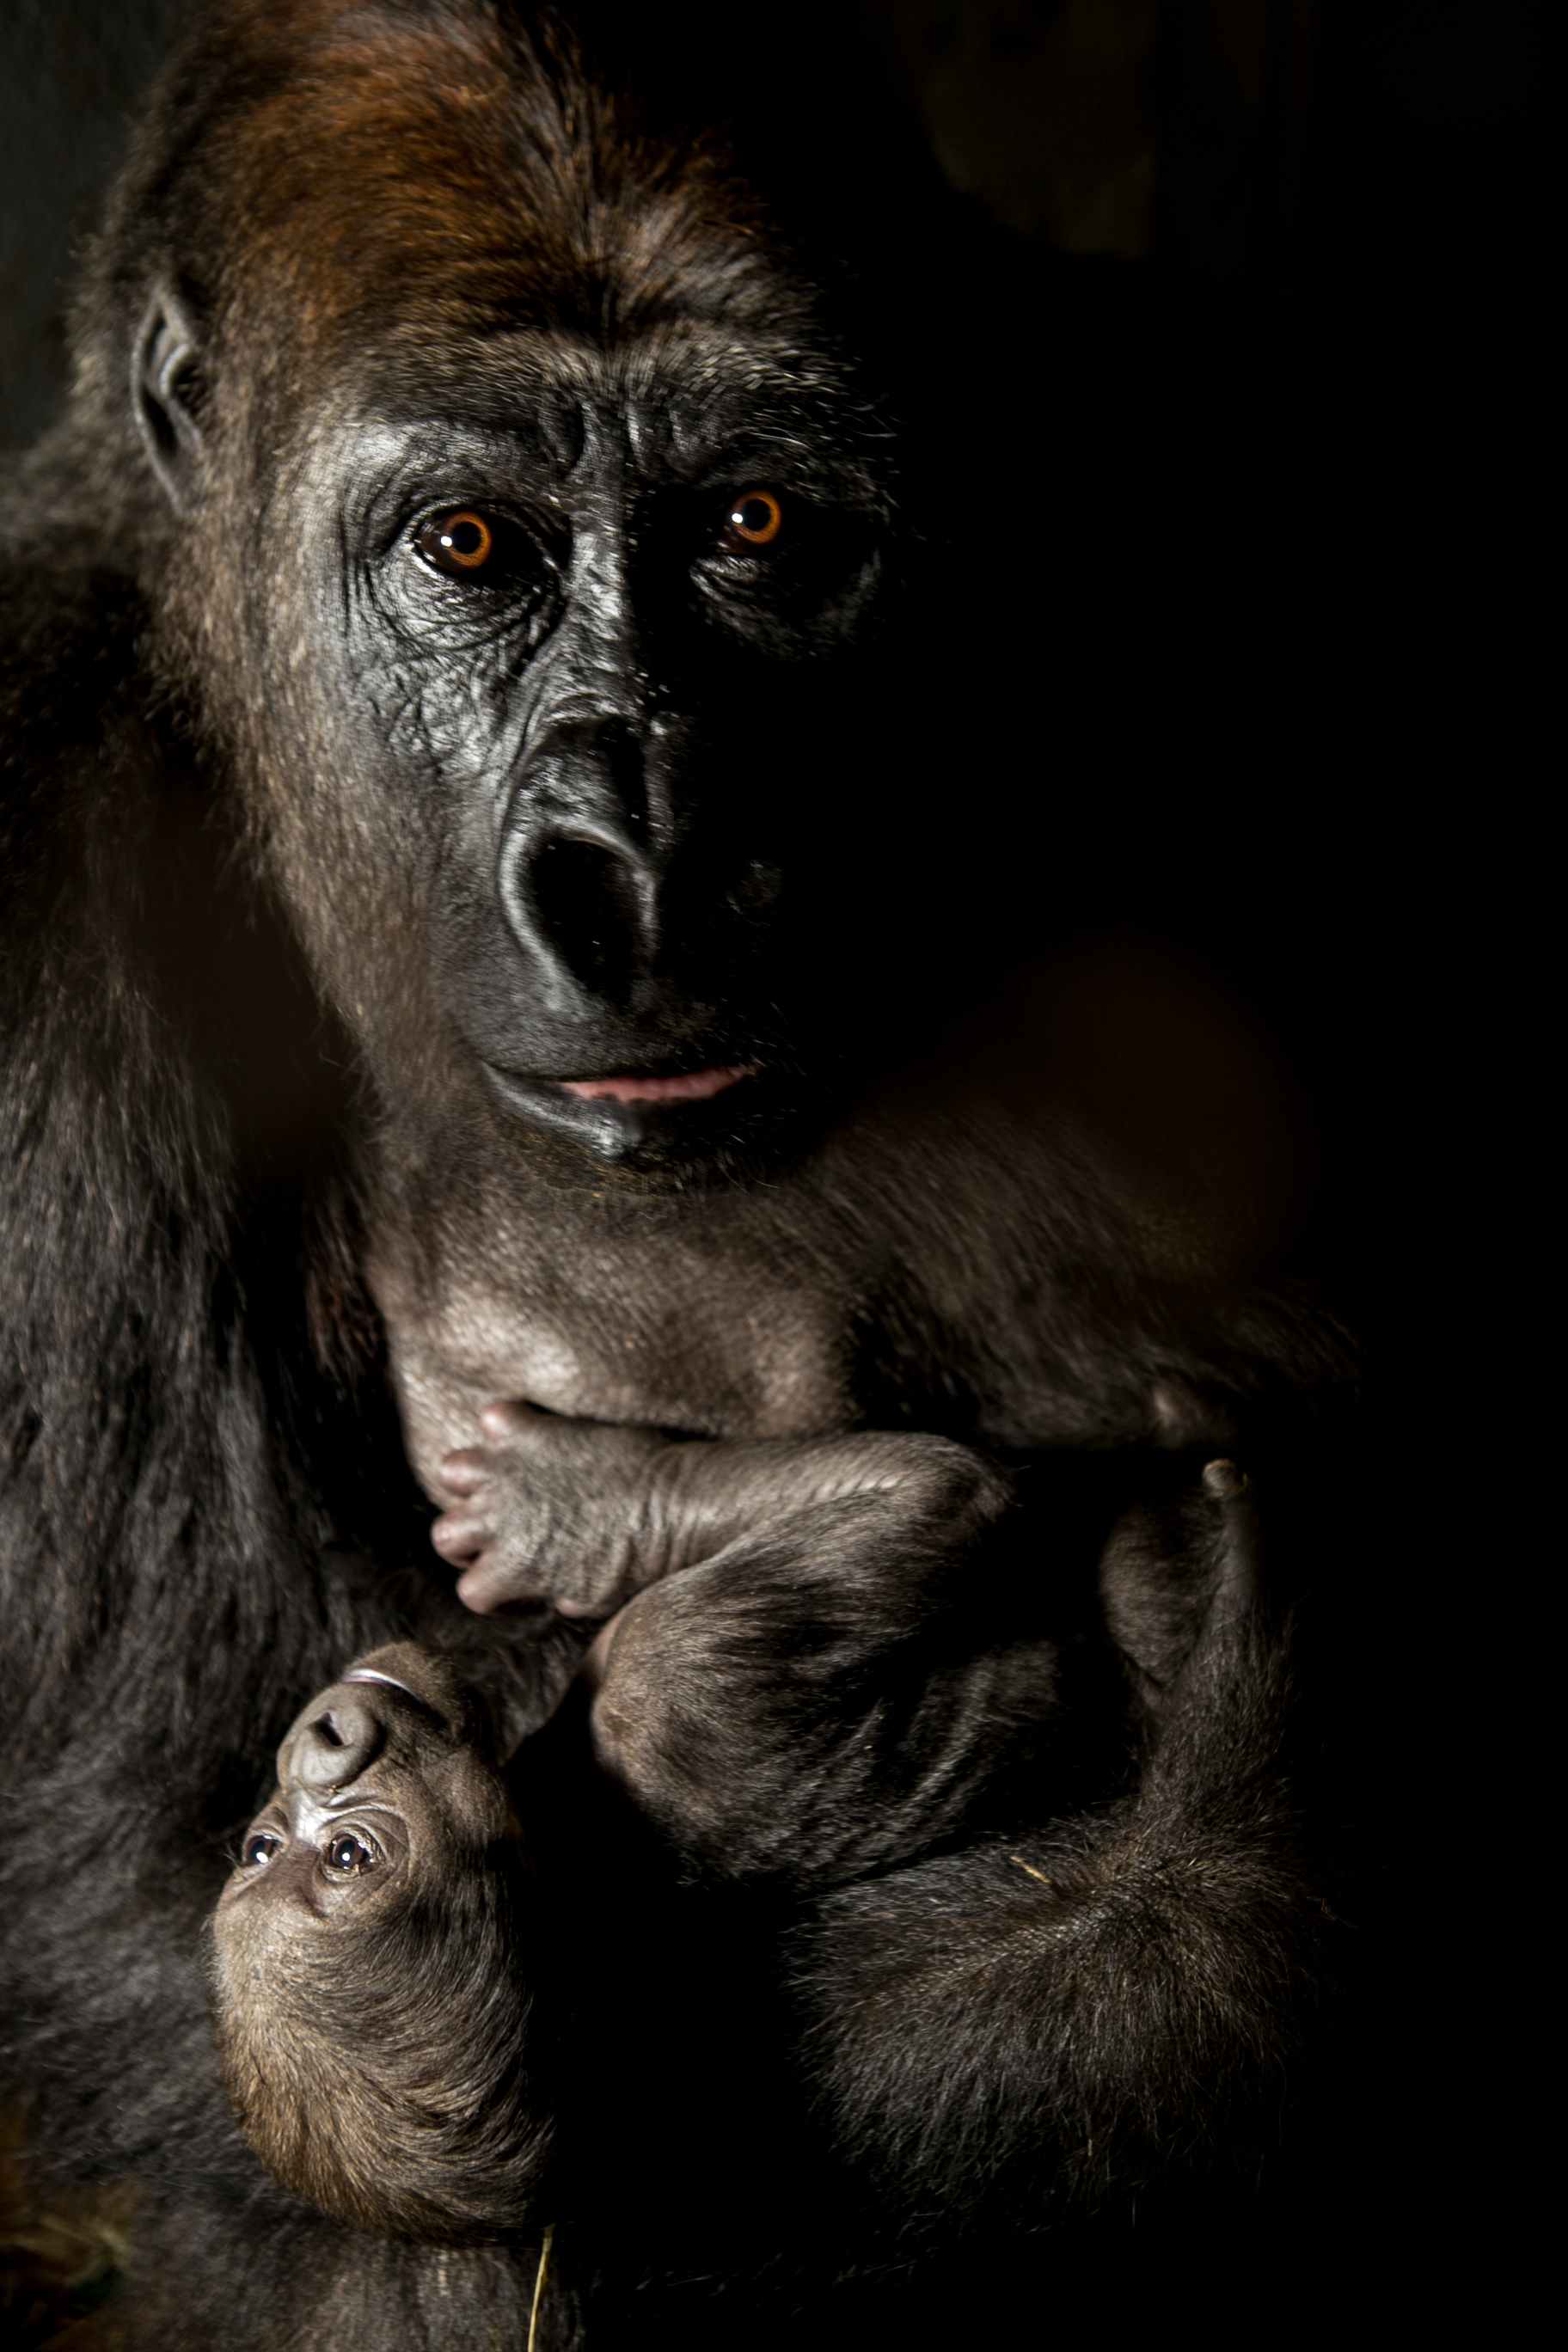 filhote fêmea de gorila nascido no zoo de BH